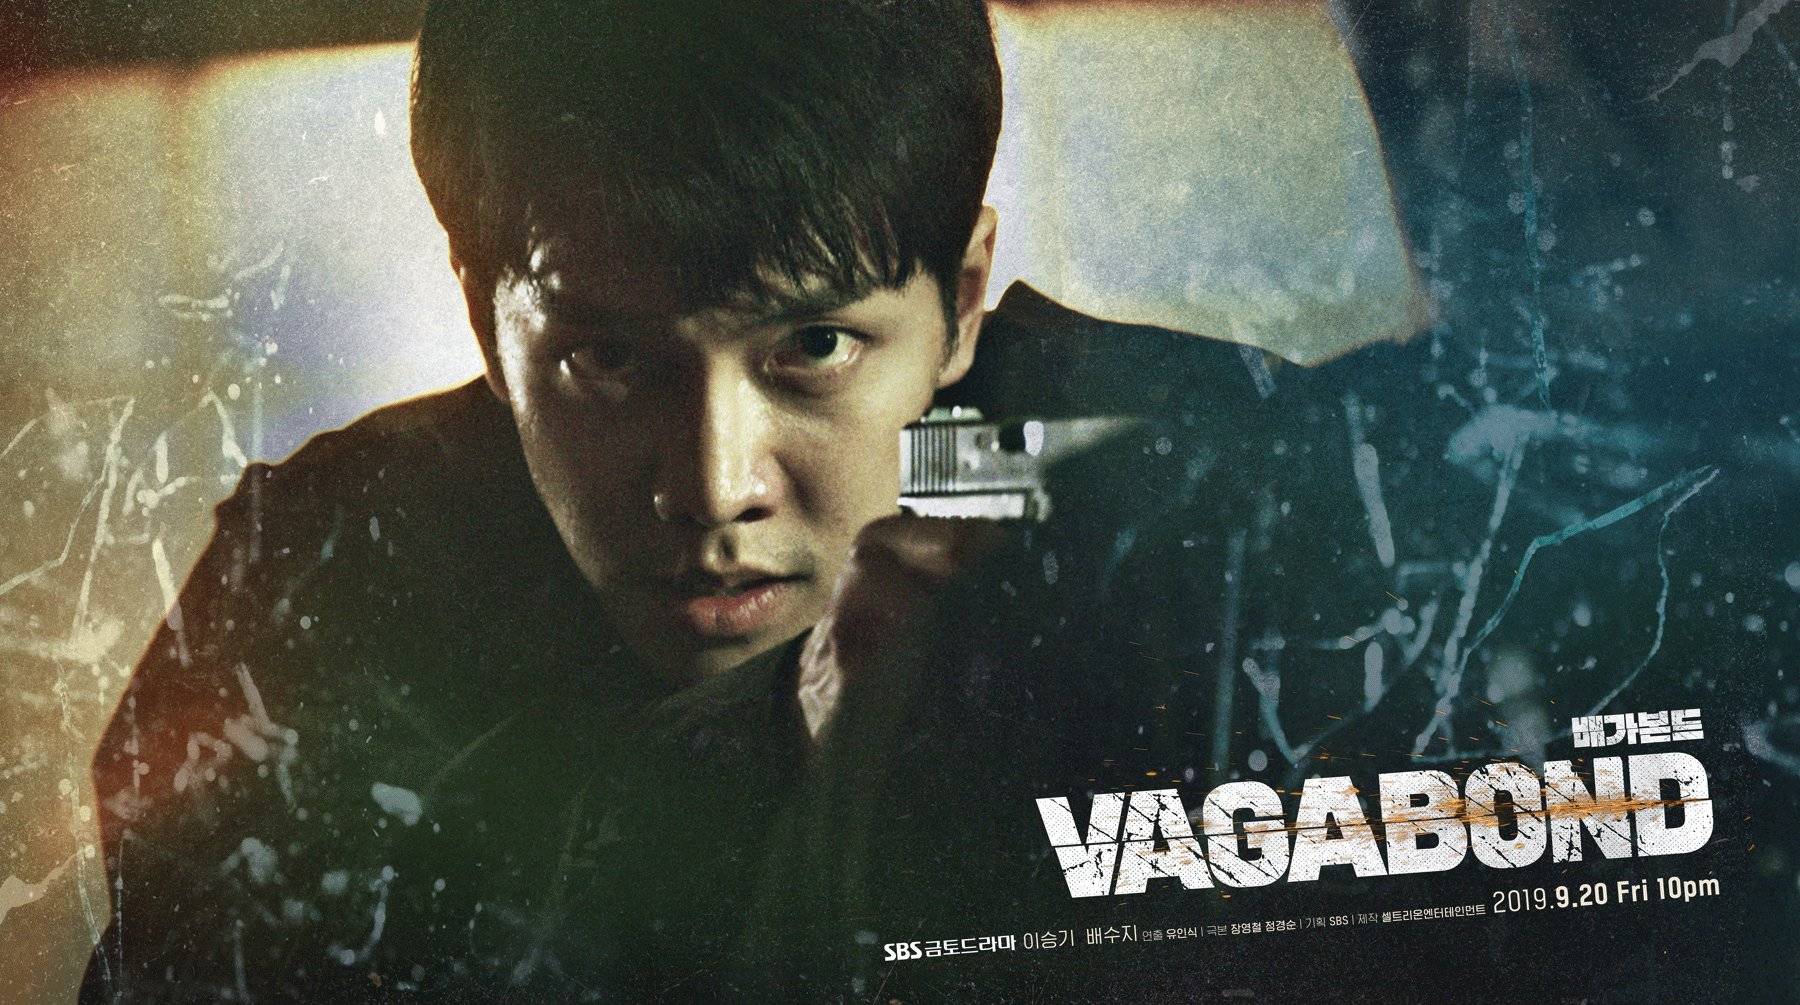 Association Skære af Åh gud Video + Photos] New Posters and Teaser Added for the Upcoming Korean Drama ' Vagabond' @ HanCinema